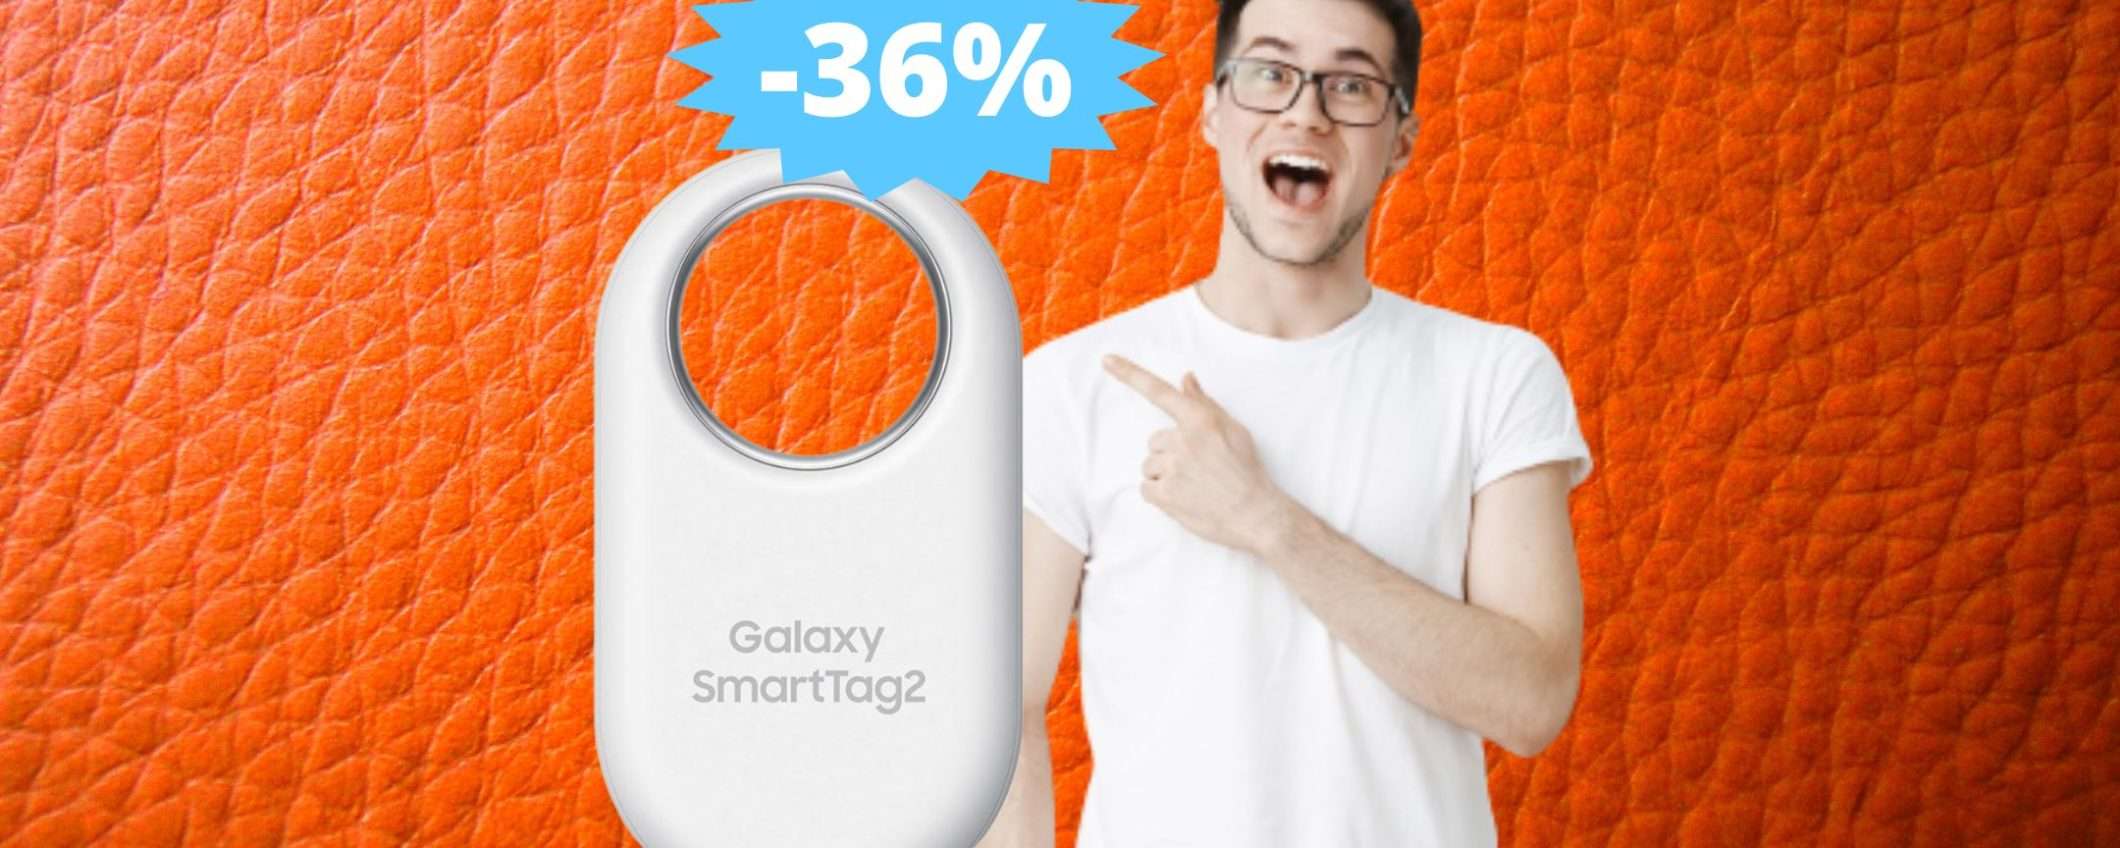 Samsung Galaxy SmartTag2: sconto ESCLUSIVO del 36% su Amazon